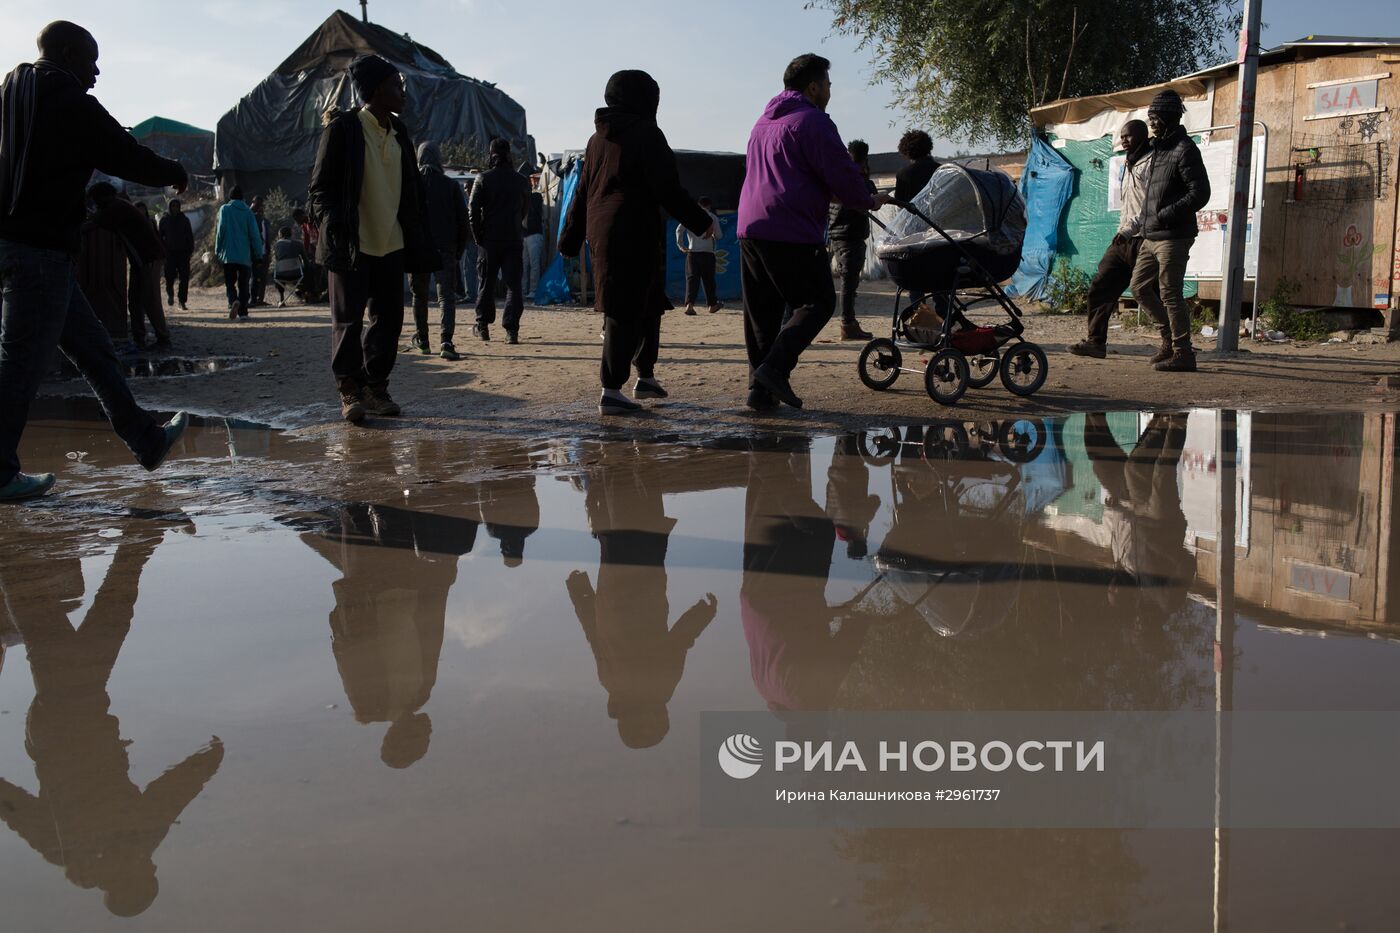 Ситуация в лагере беженцев в Кале во Франции